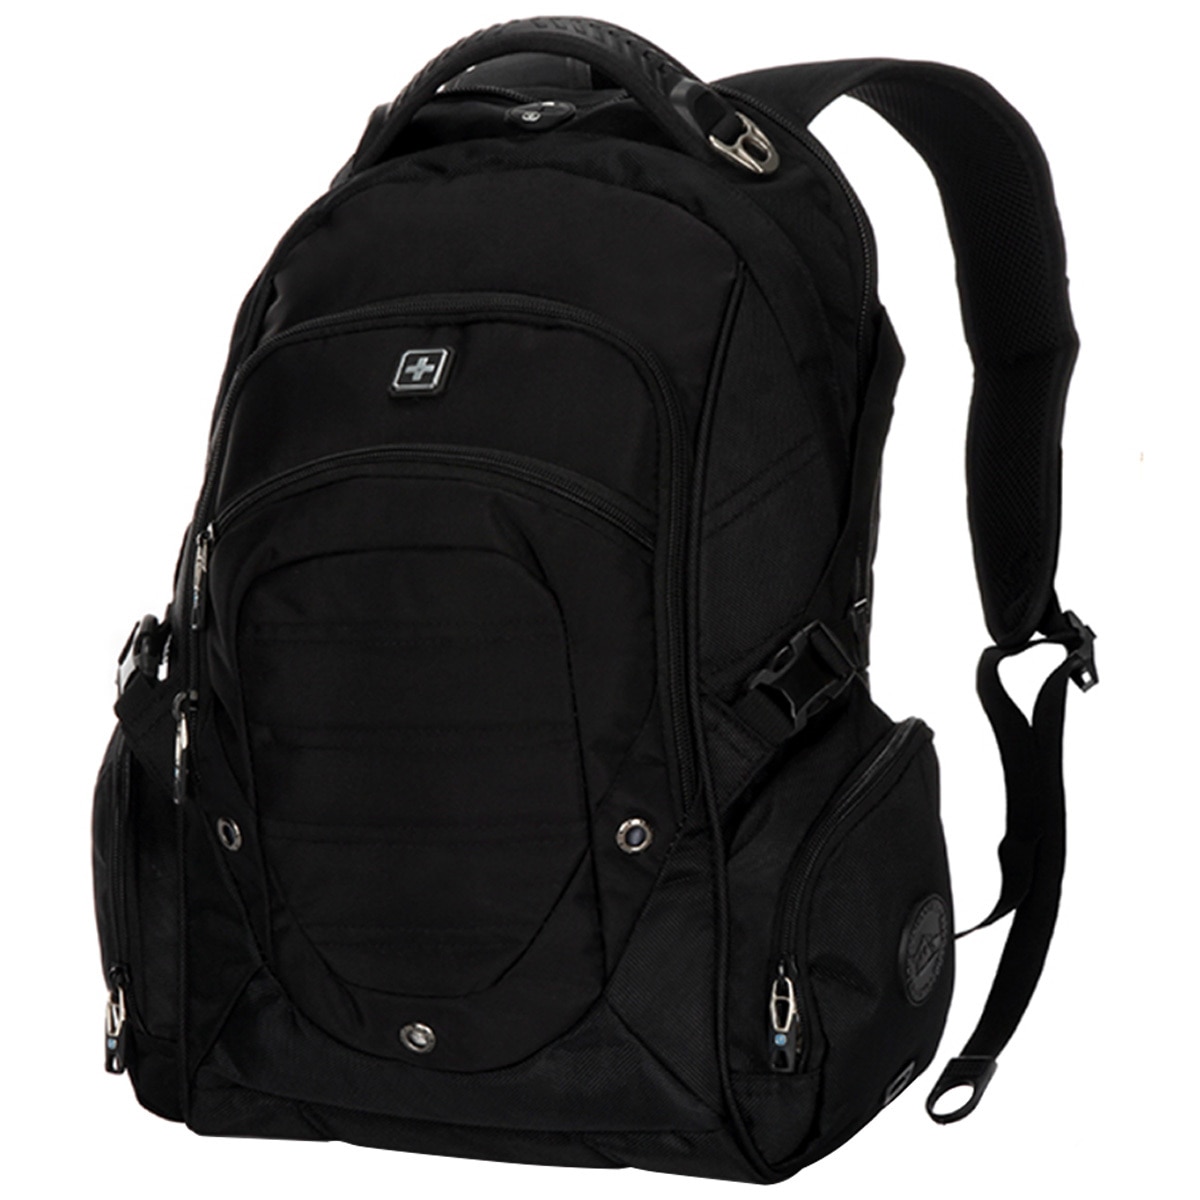 Suissewin Backpack SN9851 - Black